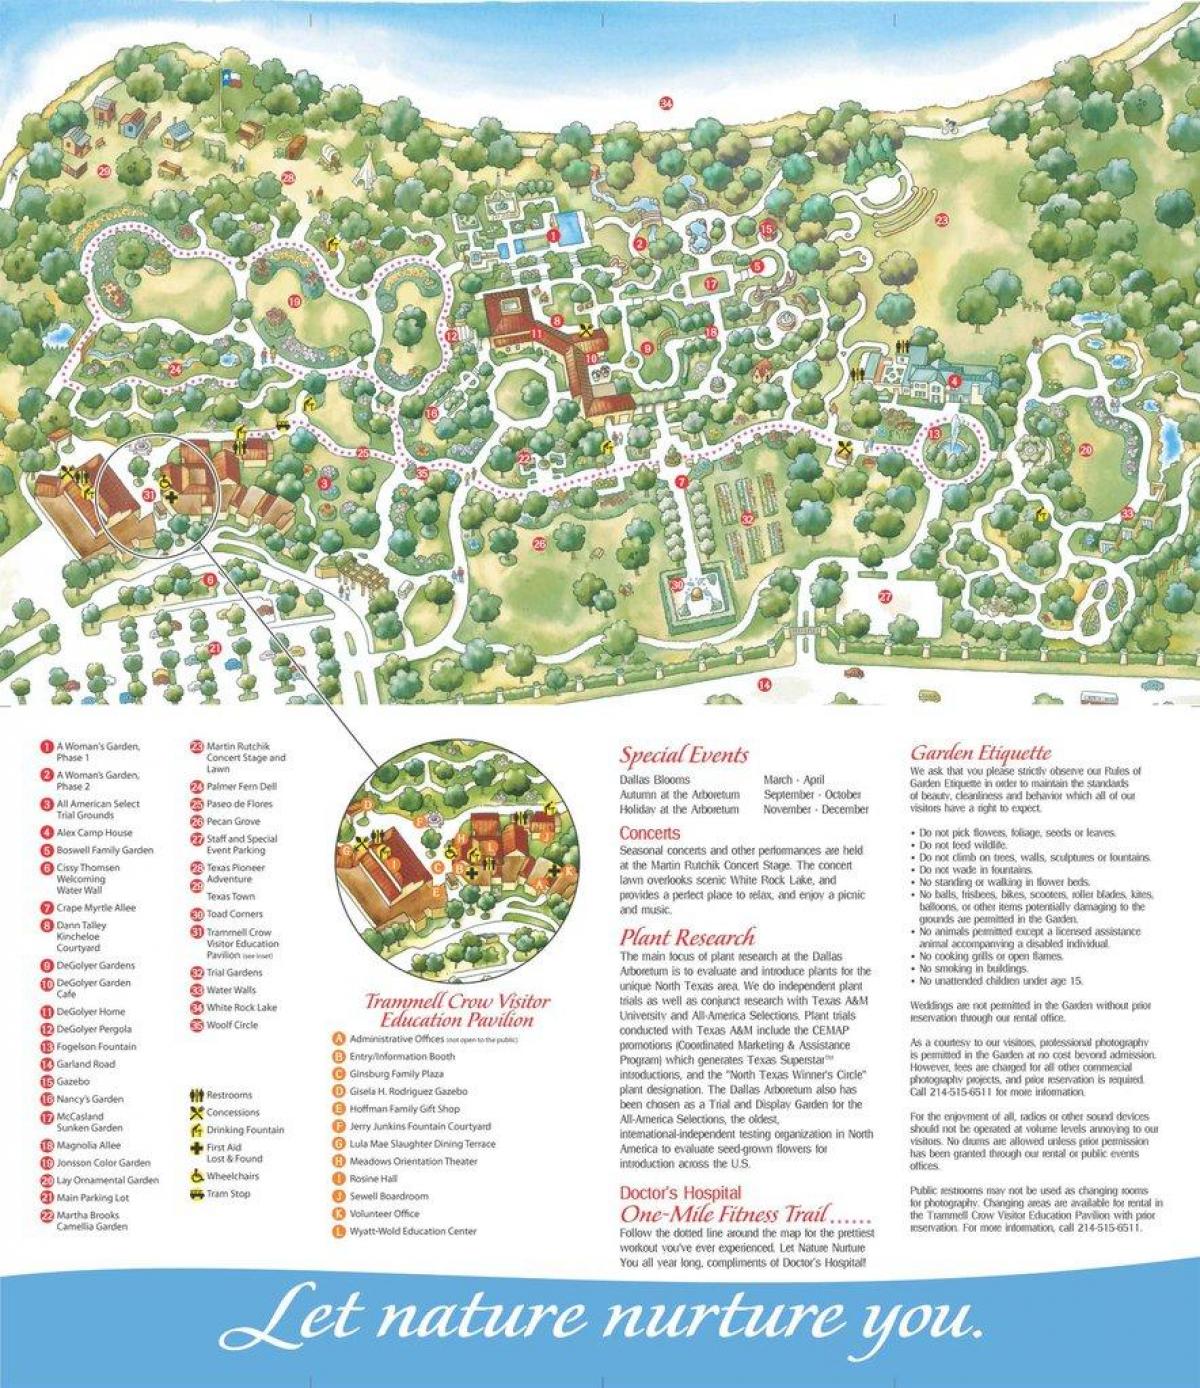 نقشہ کے شہر ڈلاس کے arboretum